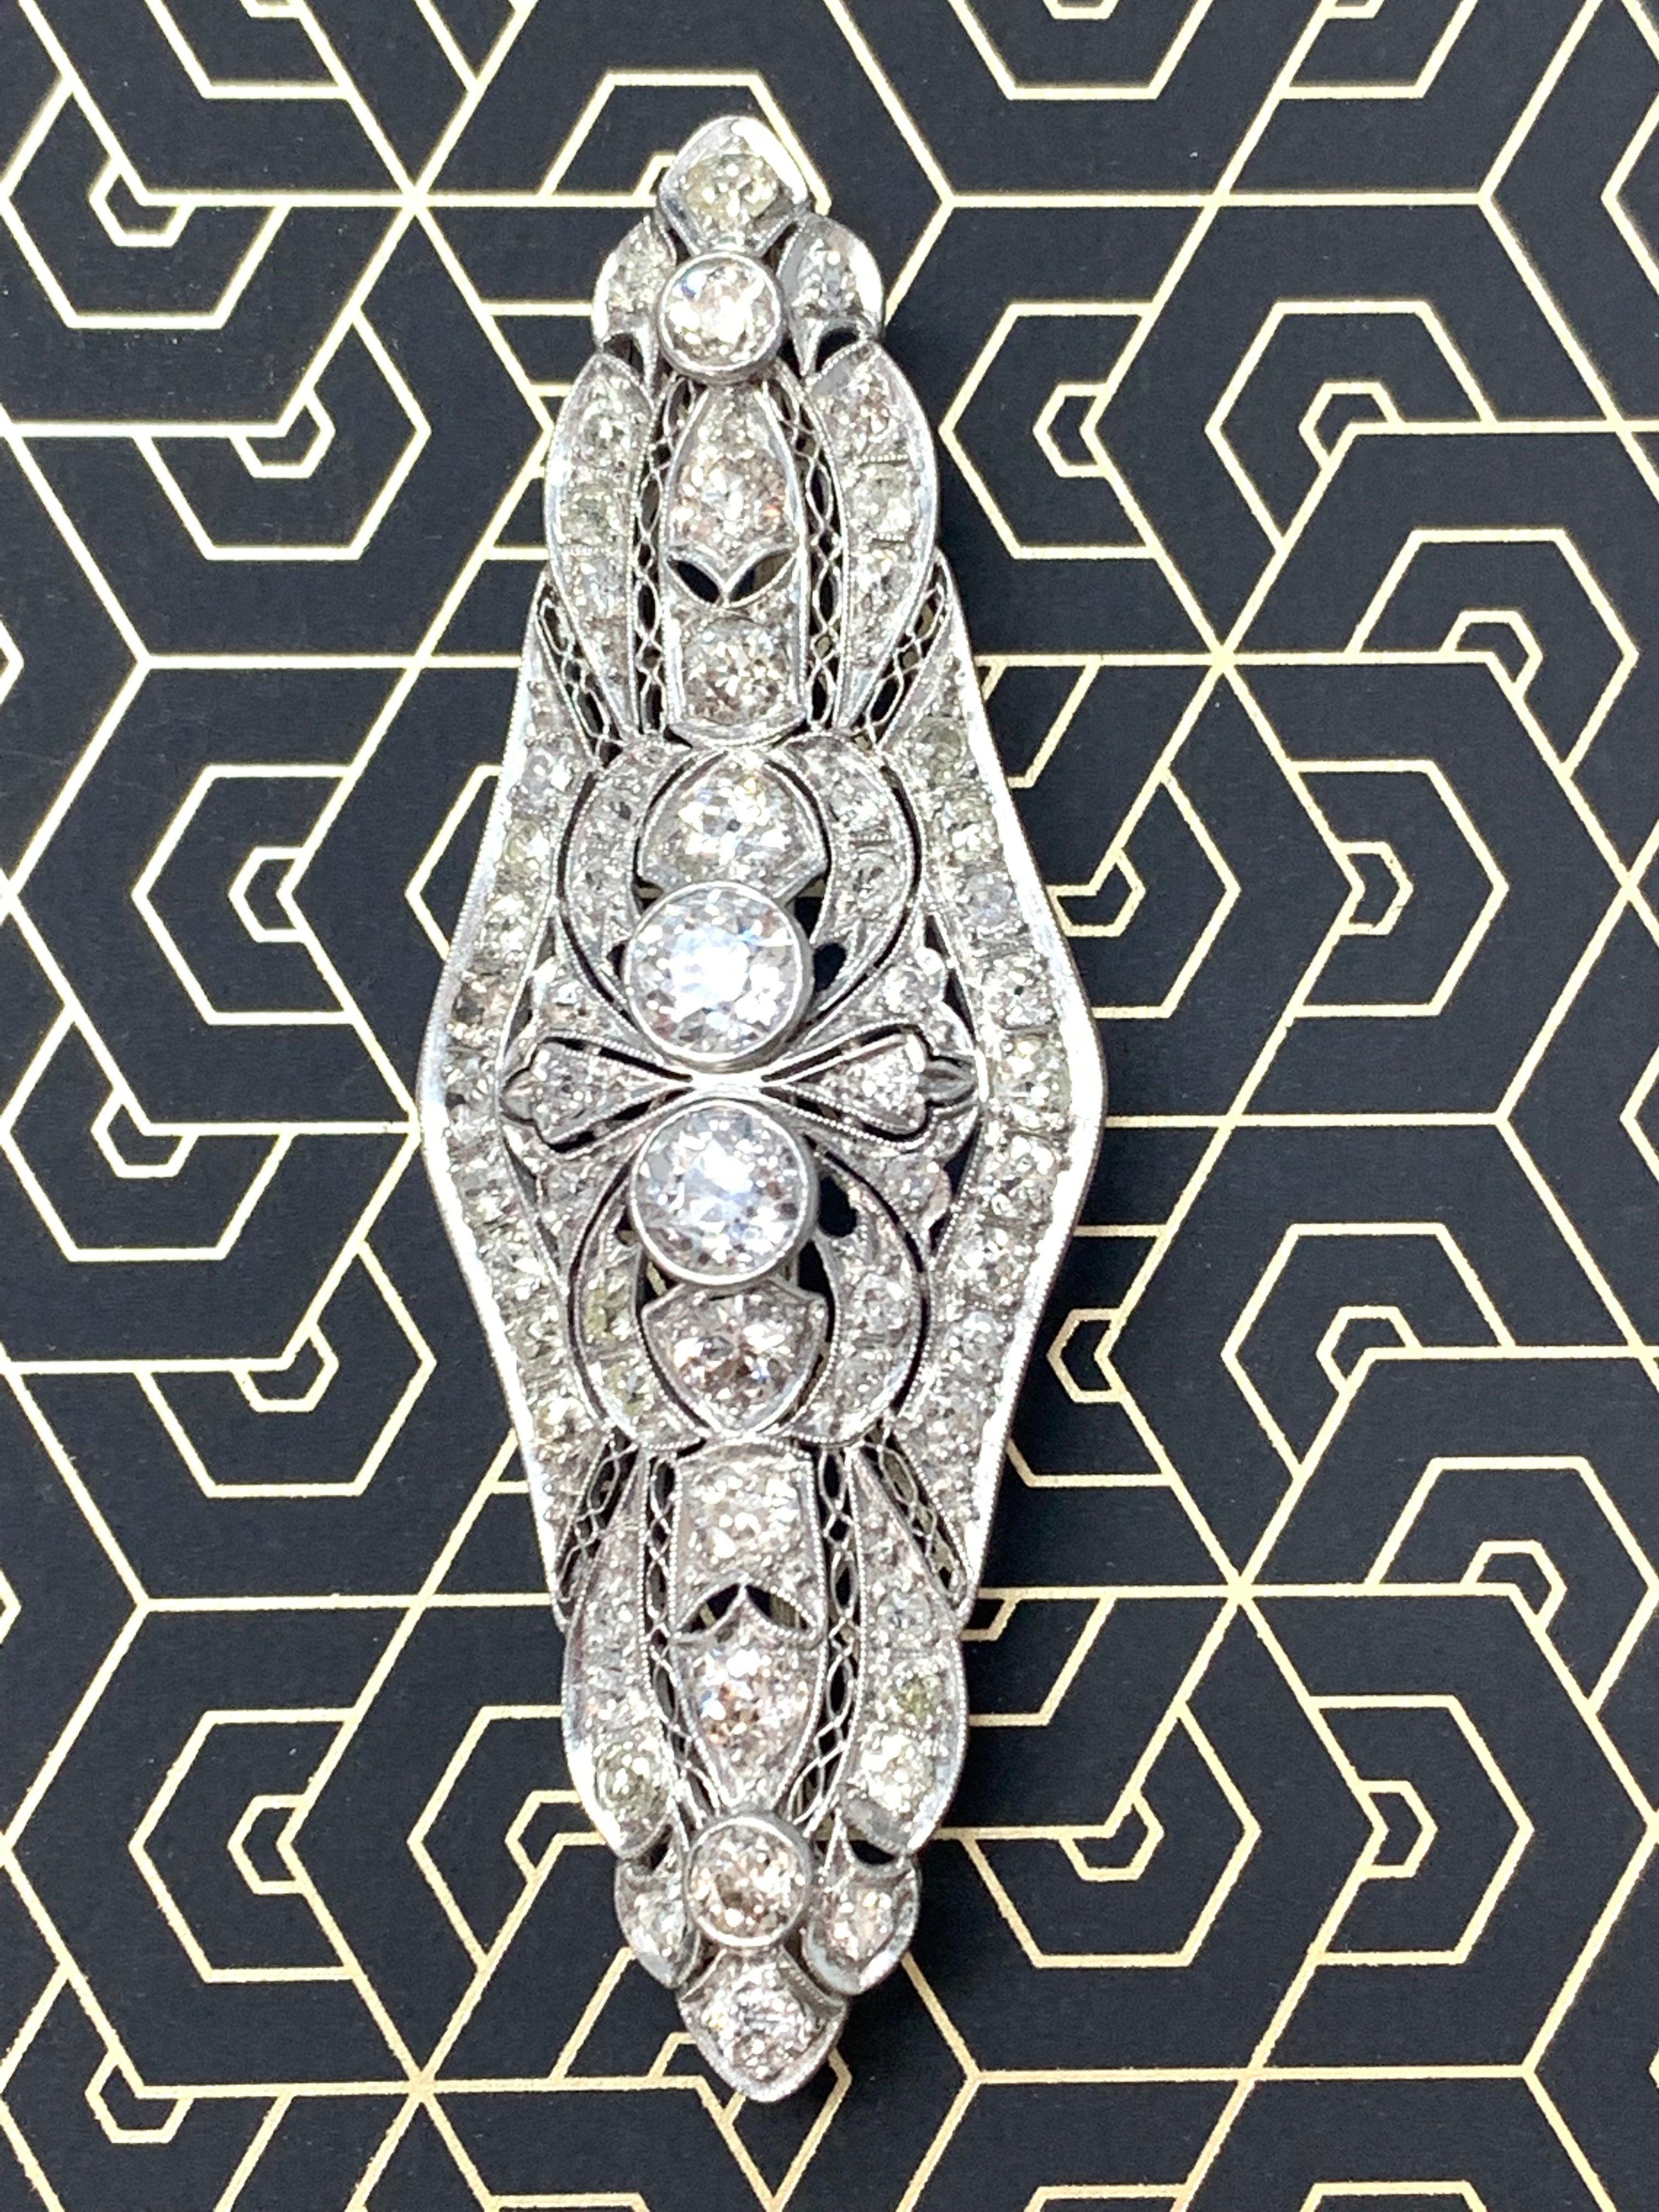 Round Cut 1920 Antique Diamond Broach in Platinum